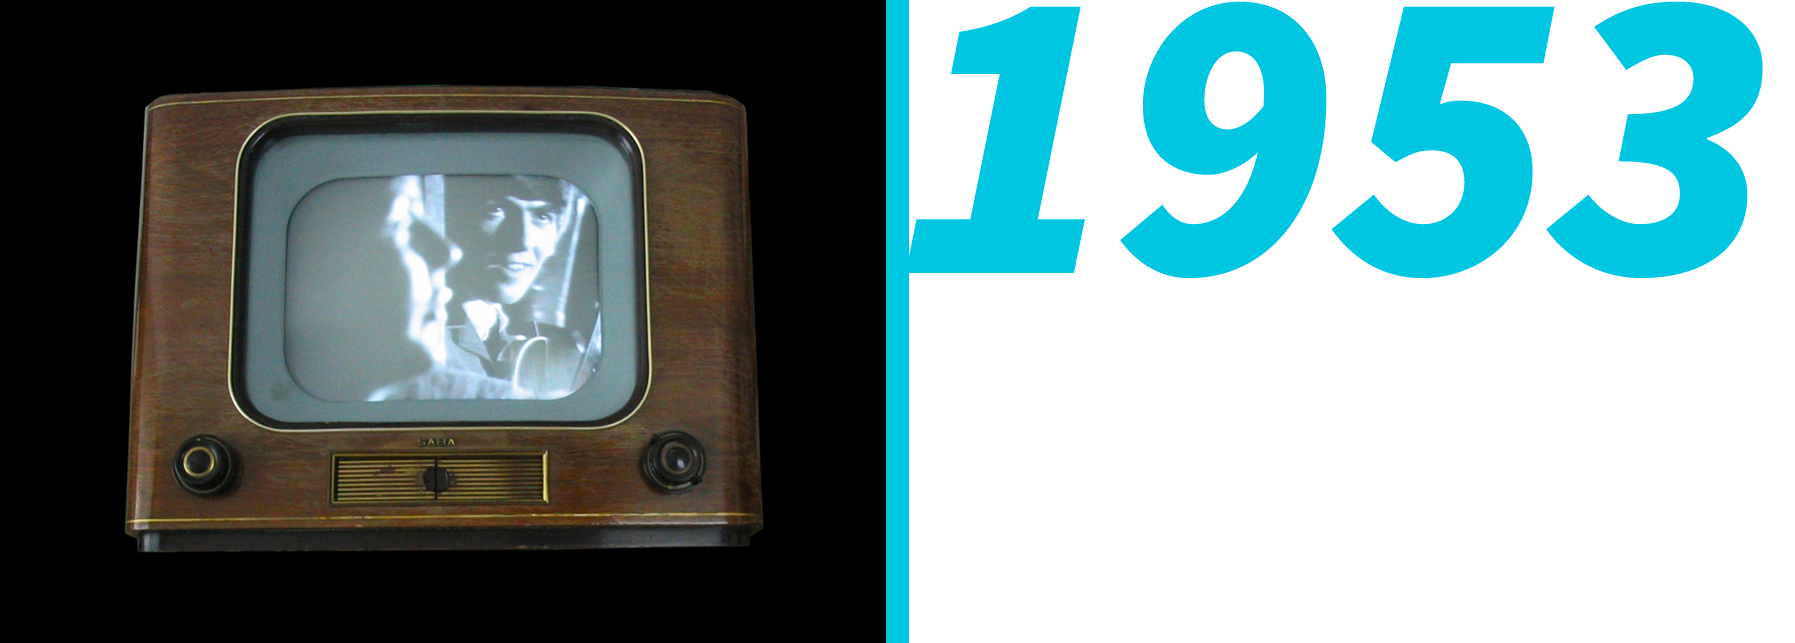 SCHNEIDER-Téléviseur noir et blanc de 1958 (vintage) – Antique MarcBea